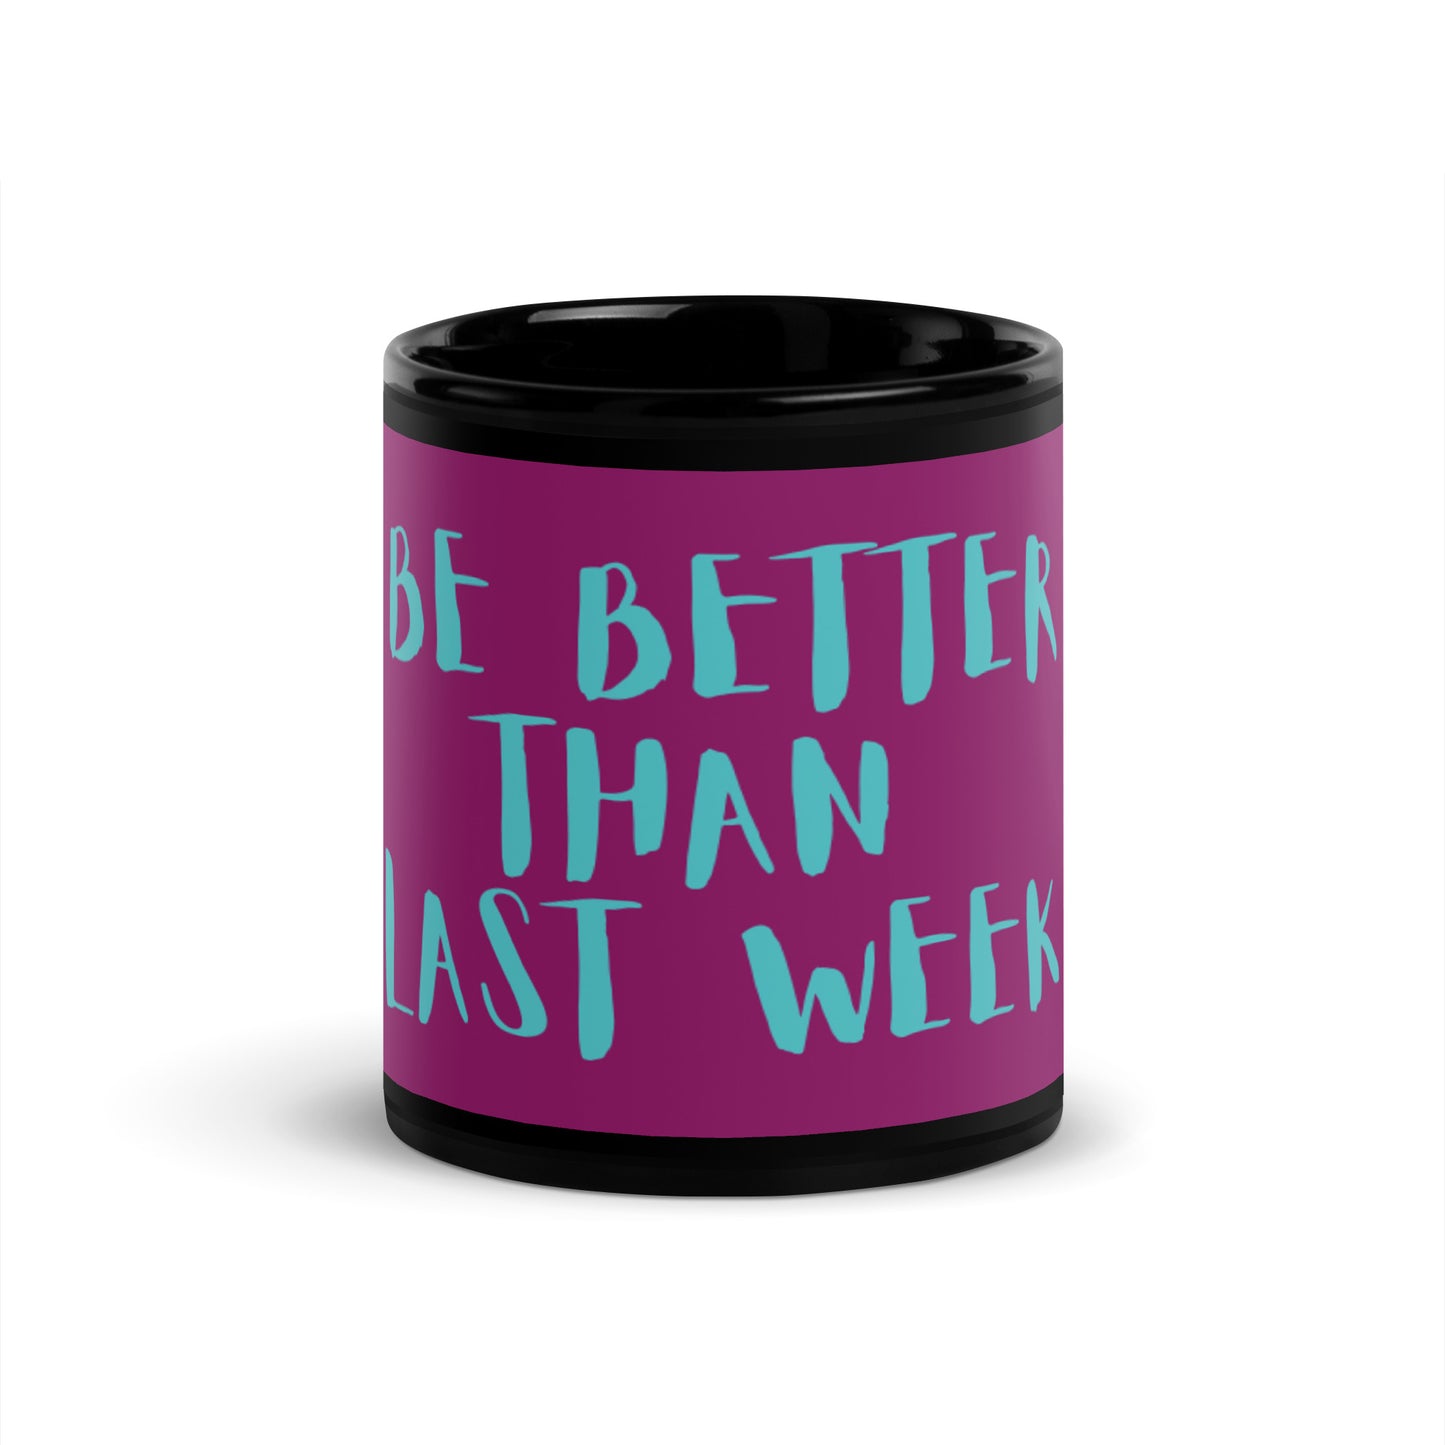 Mug brillant noir violet - Soyez meilleur que la semaine dernière